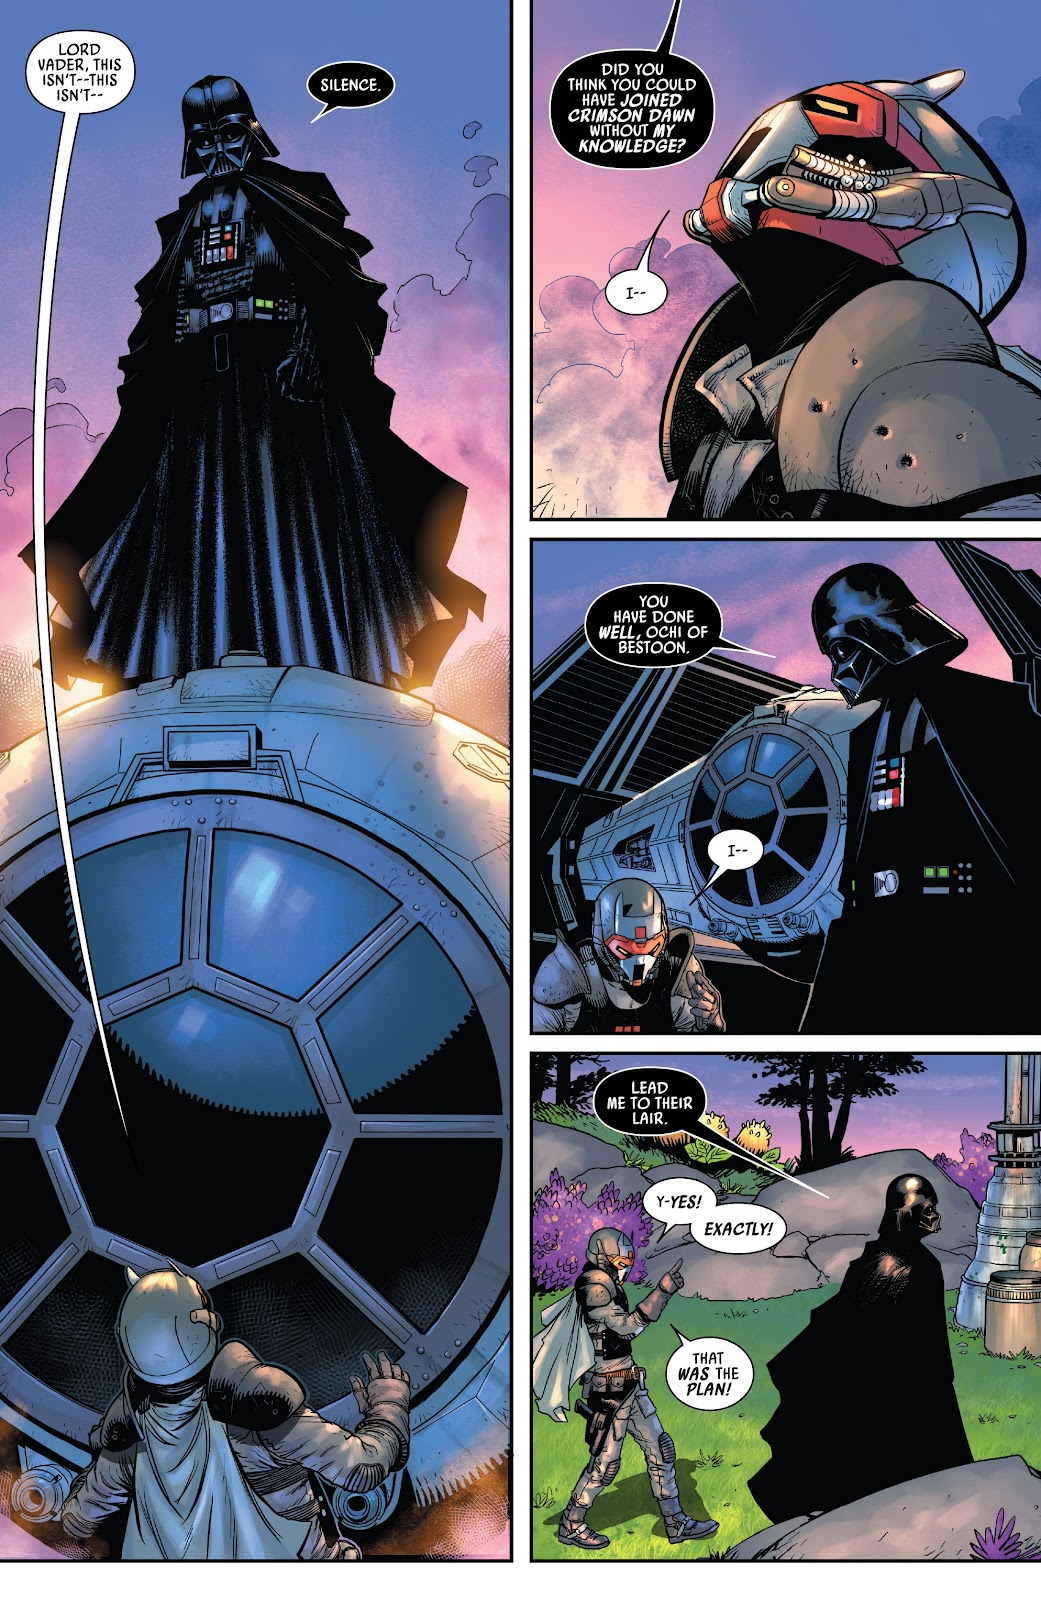 Darth Vader Recruits Royal Handmaiden Sabe